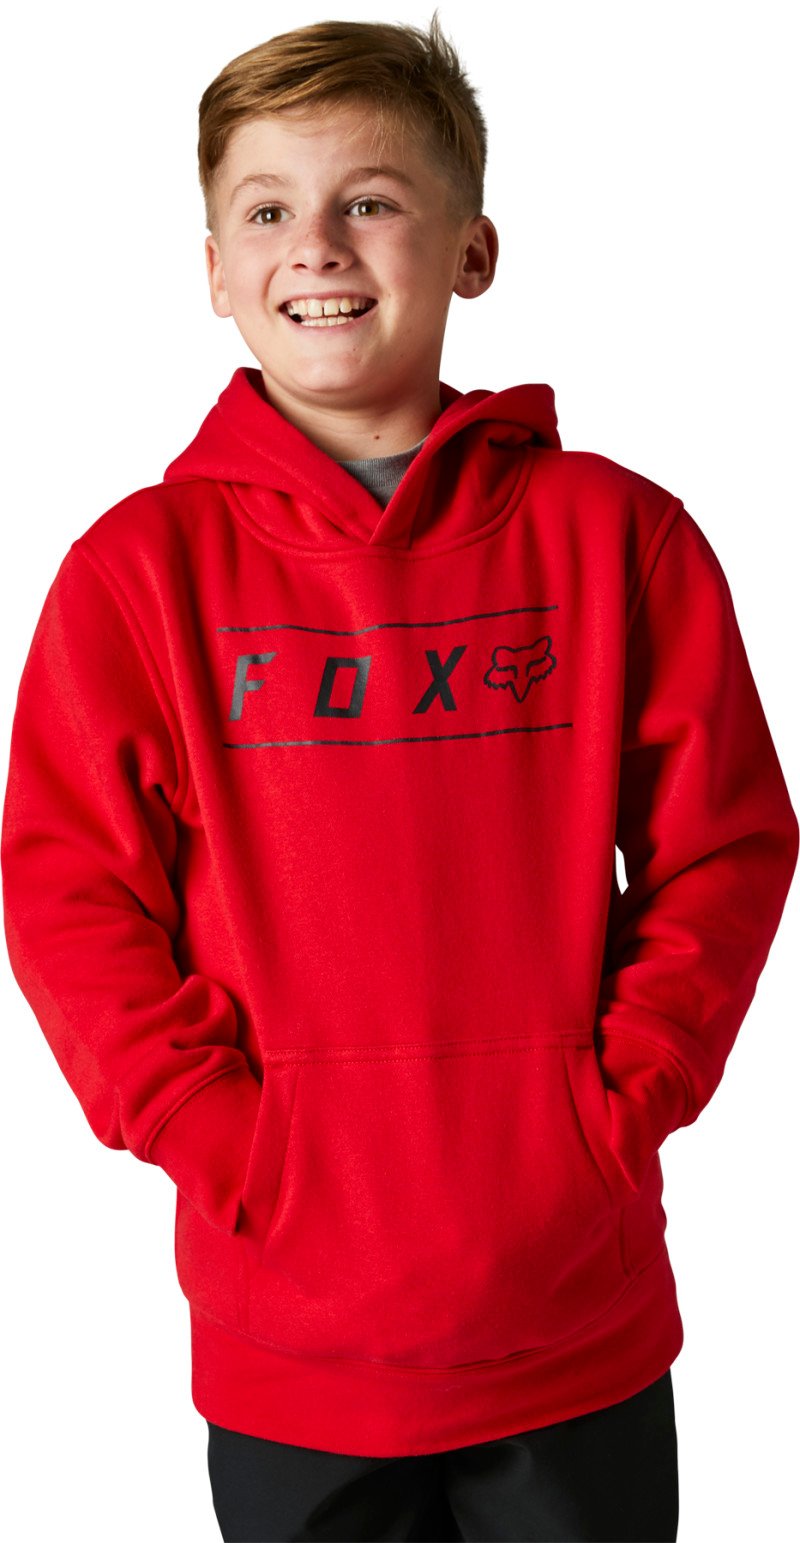 fox racing hoodies  pinnacle  hoodies - casual